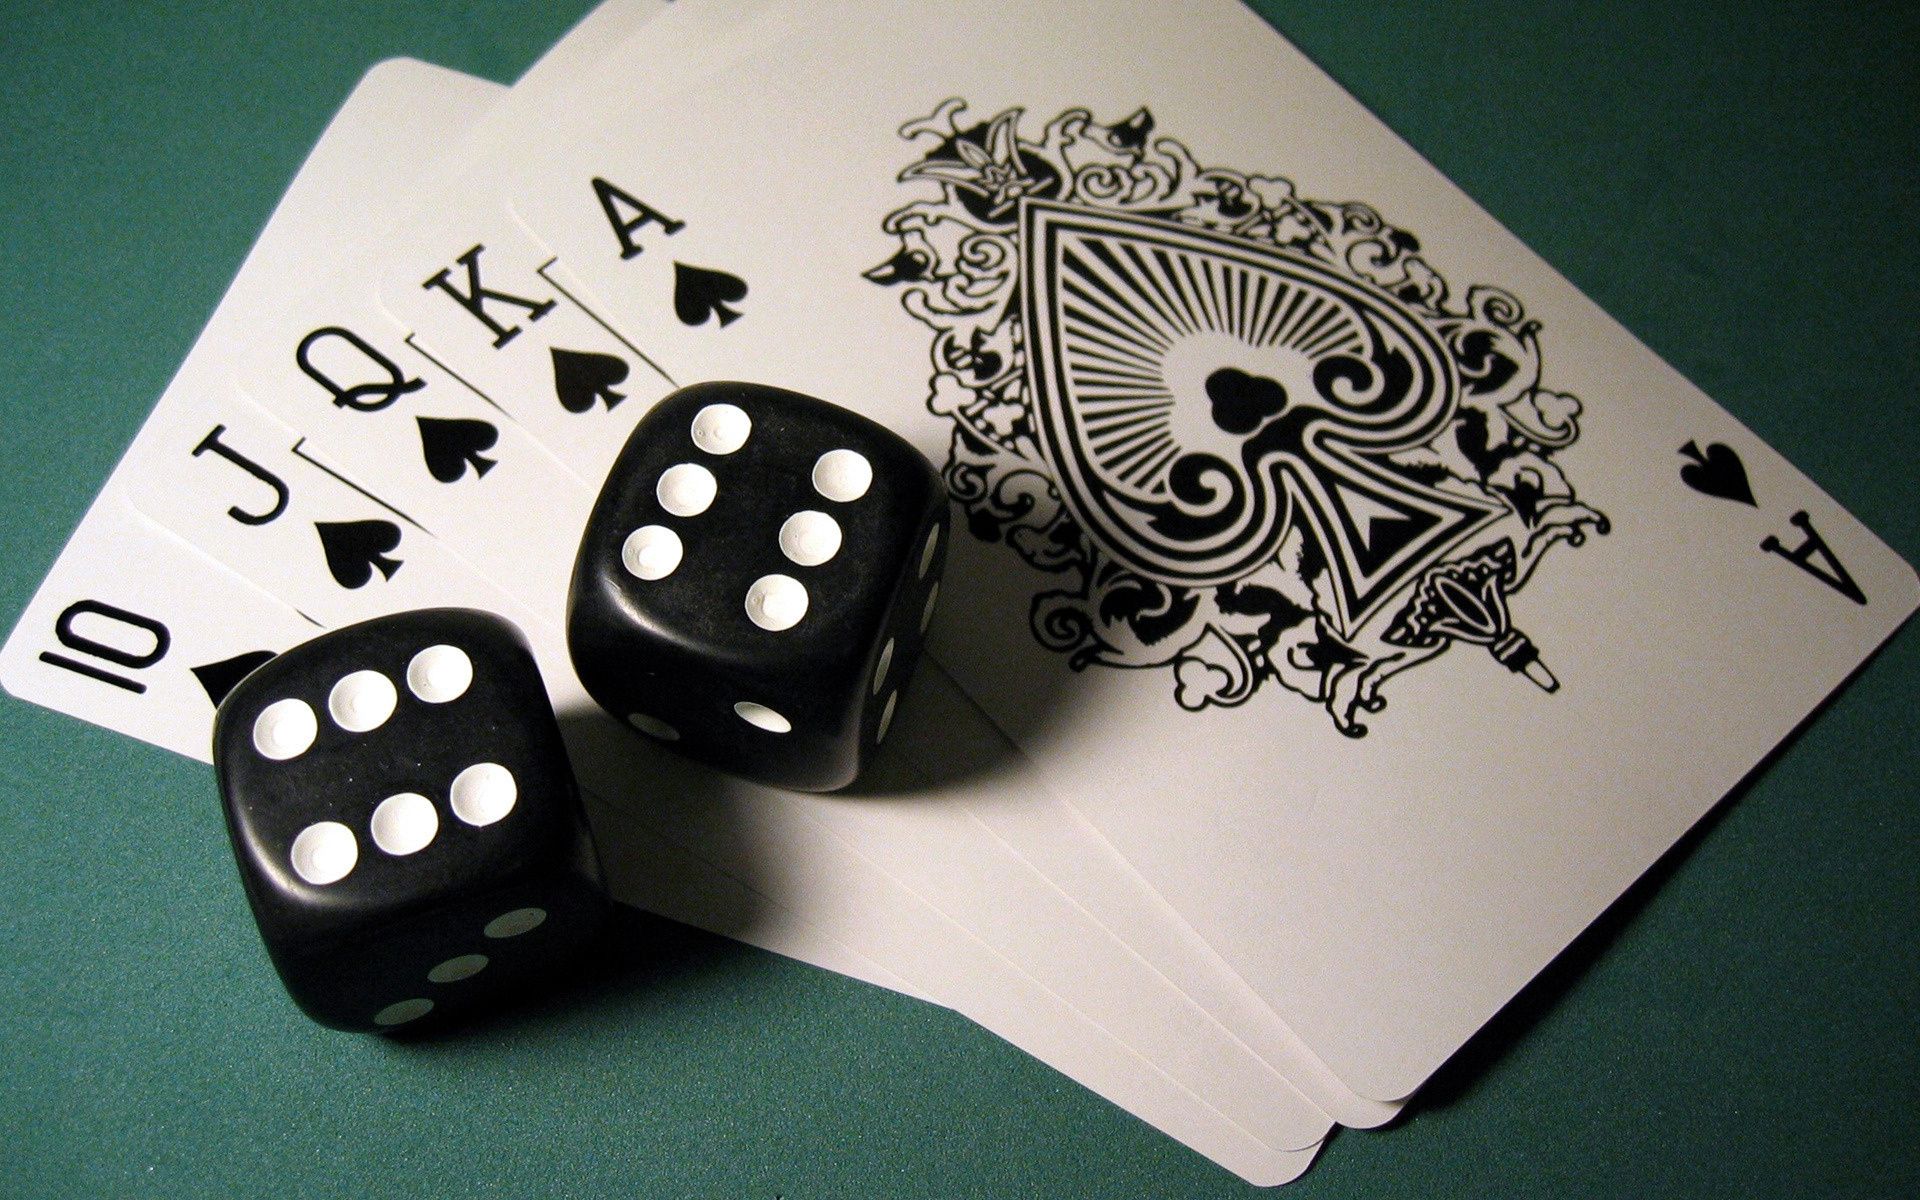 азартные игры казино шанс покер риск удачи кости туз повезло играть выиграть отдых игры успех картежник богатство победитель деньги бизнес